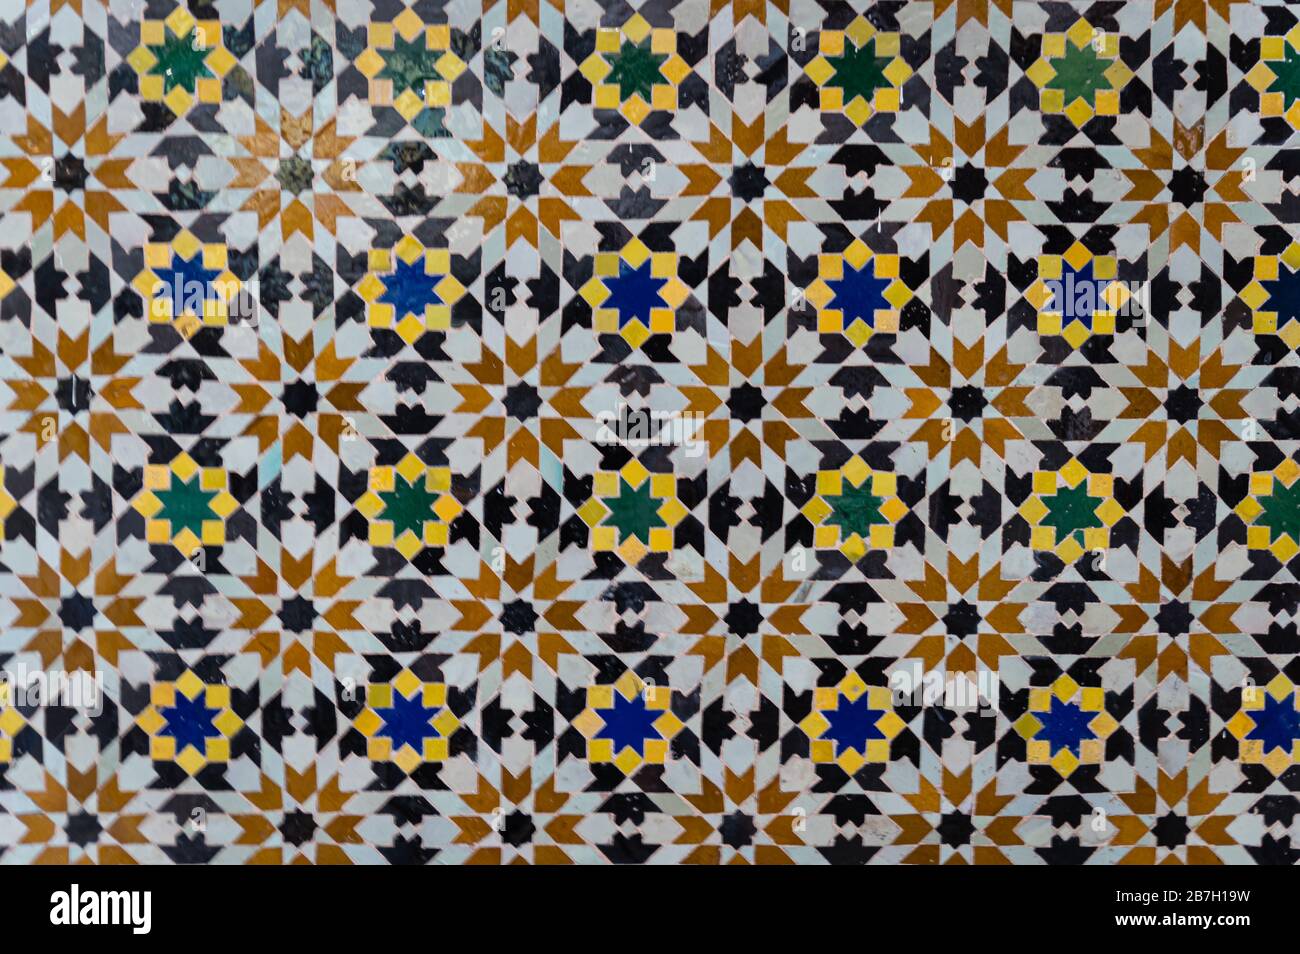 Dar el Bacha Museum of Confluences in Marrakesch. Marokko Stockfoto